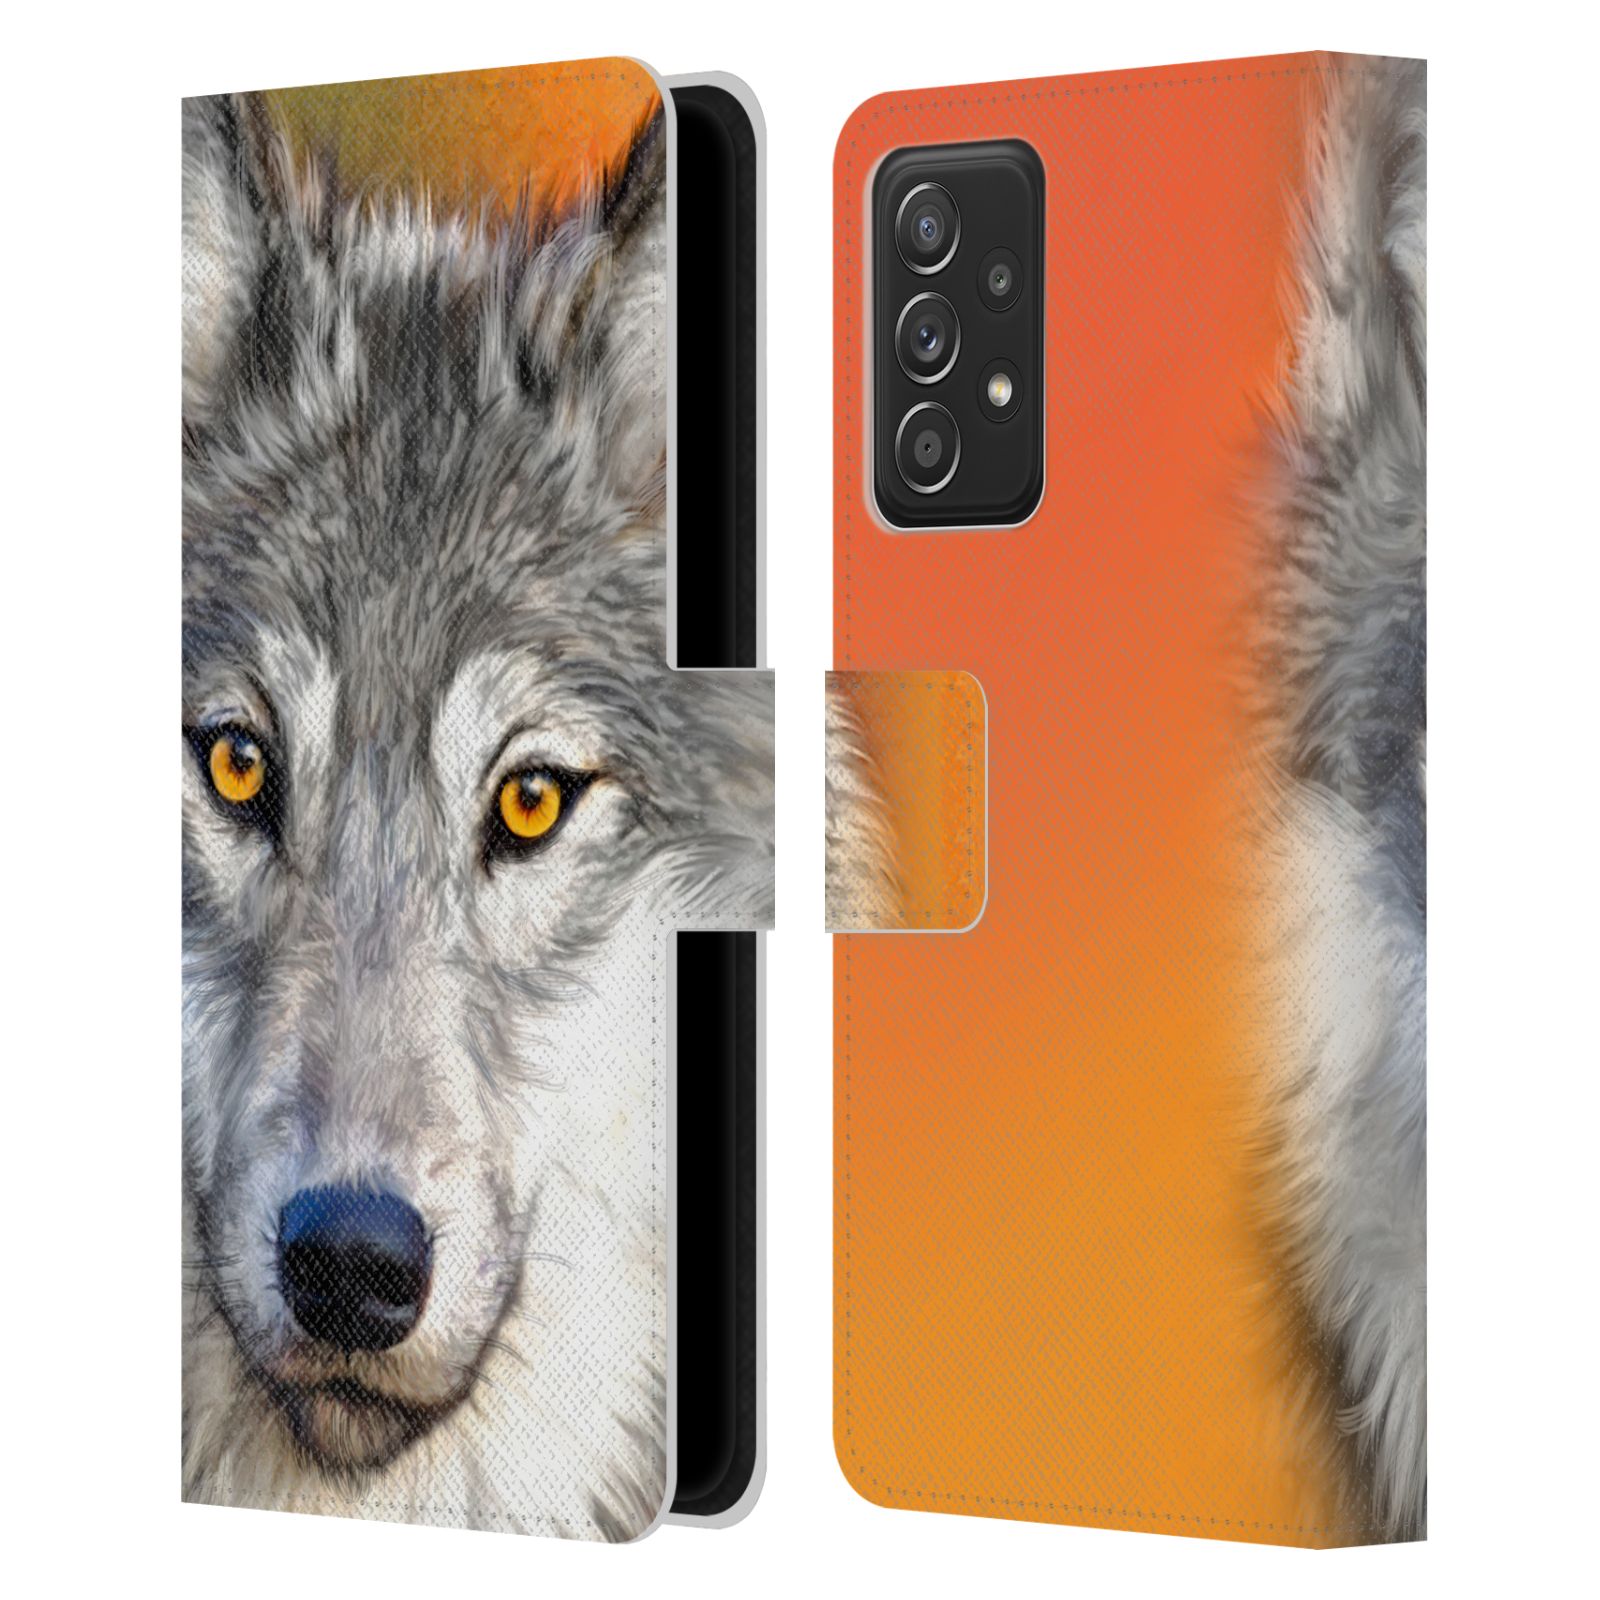 Pouzdro HEAD CASE na mobil Samsung Galaxy A52 / A52 5G / A52s 5G  vlk oranžová